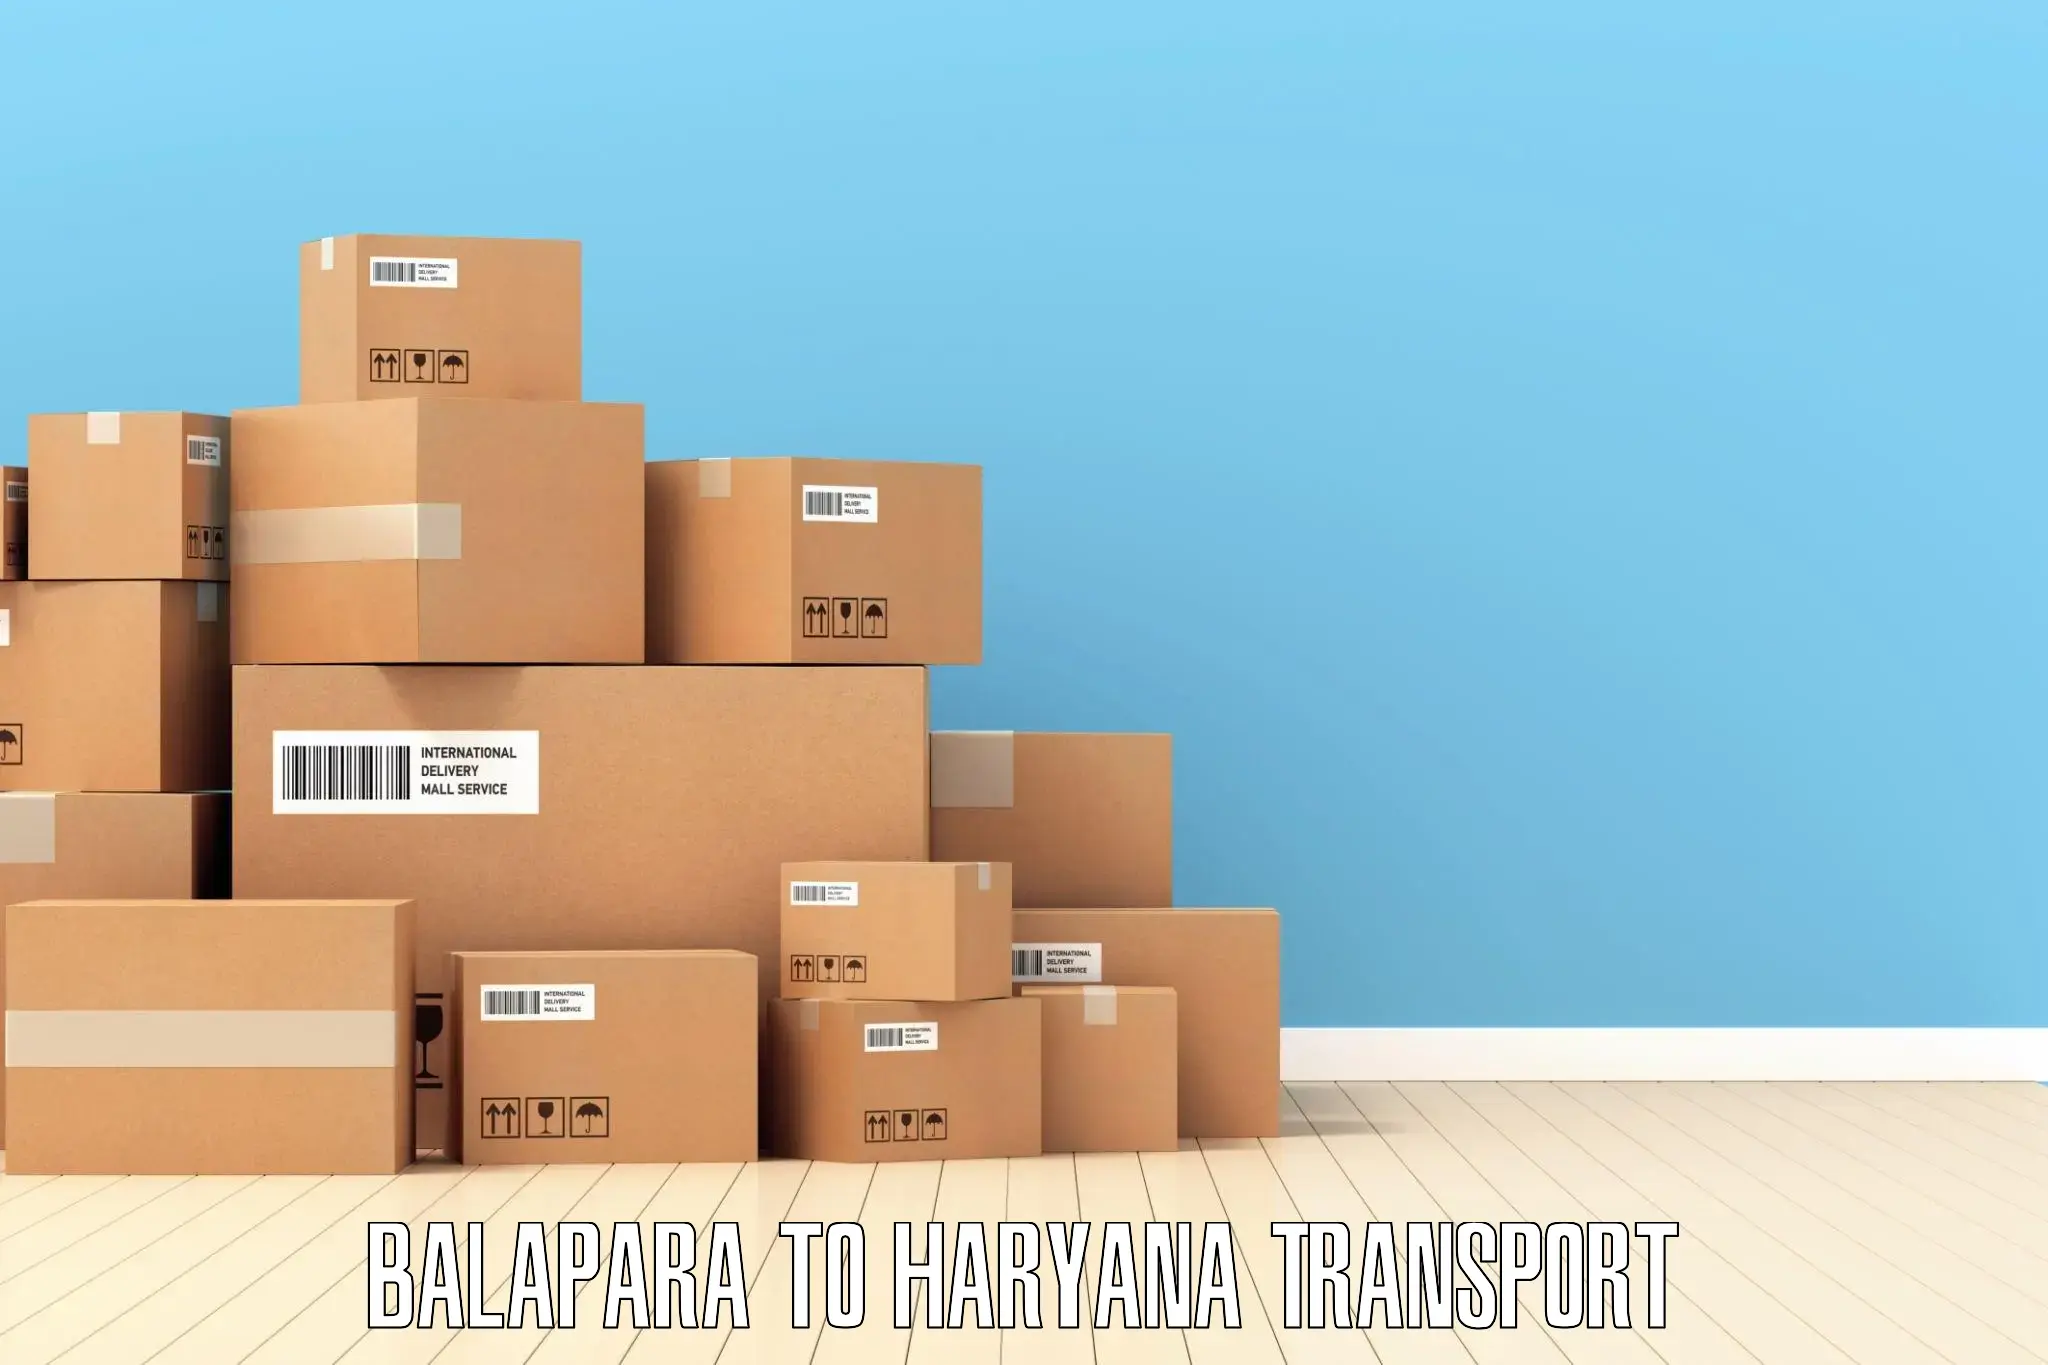 Online transport booking Balapara to Haryana